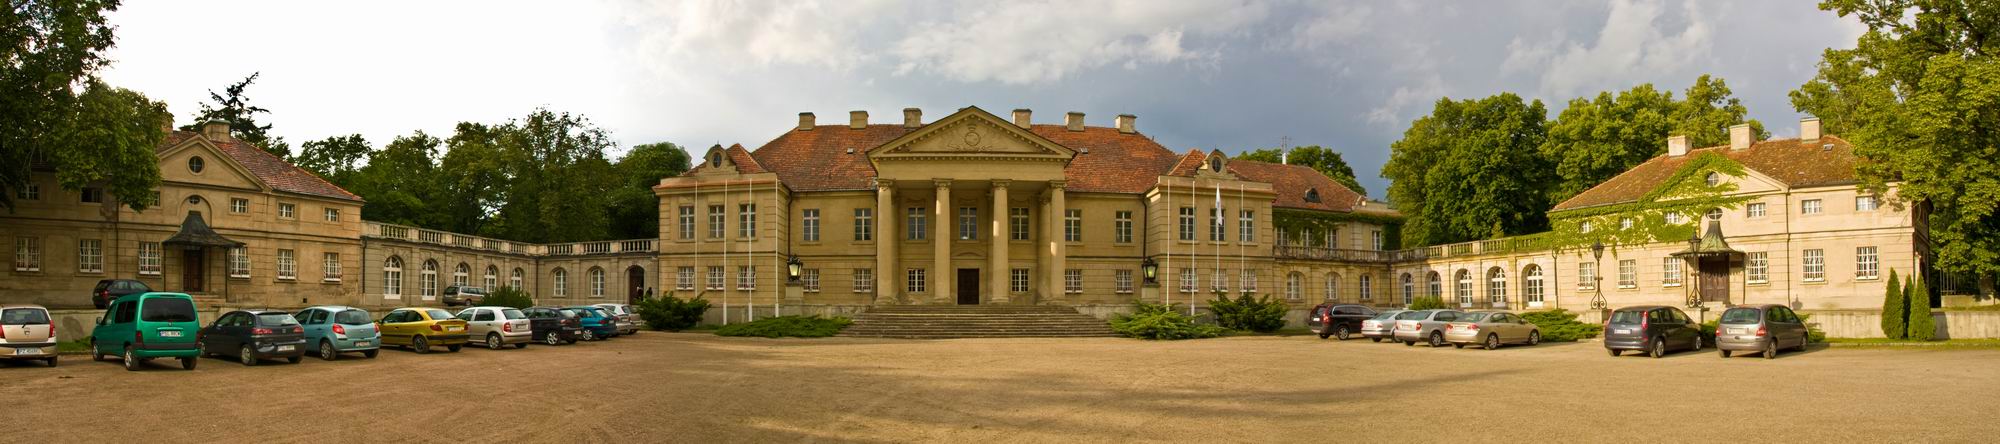 Pałac w Czerniejewie